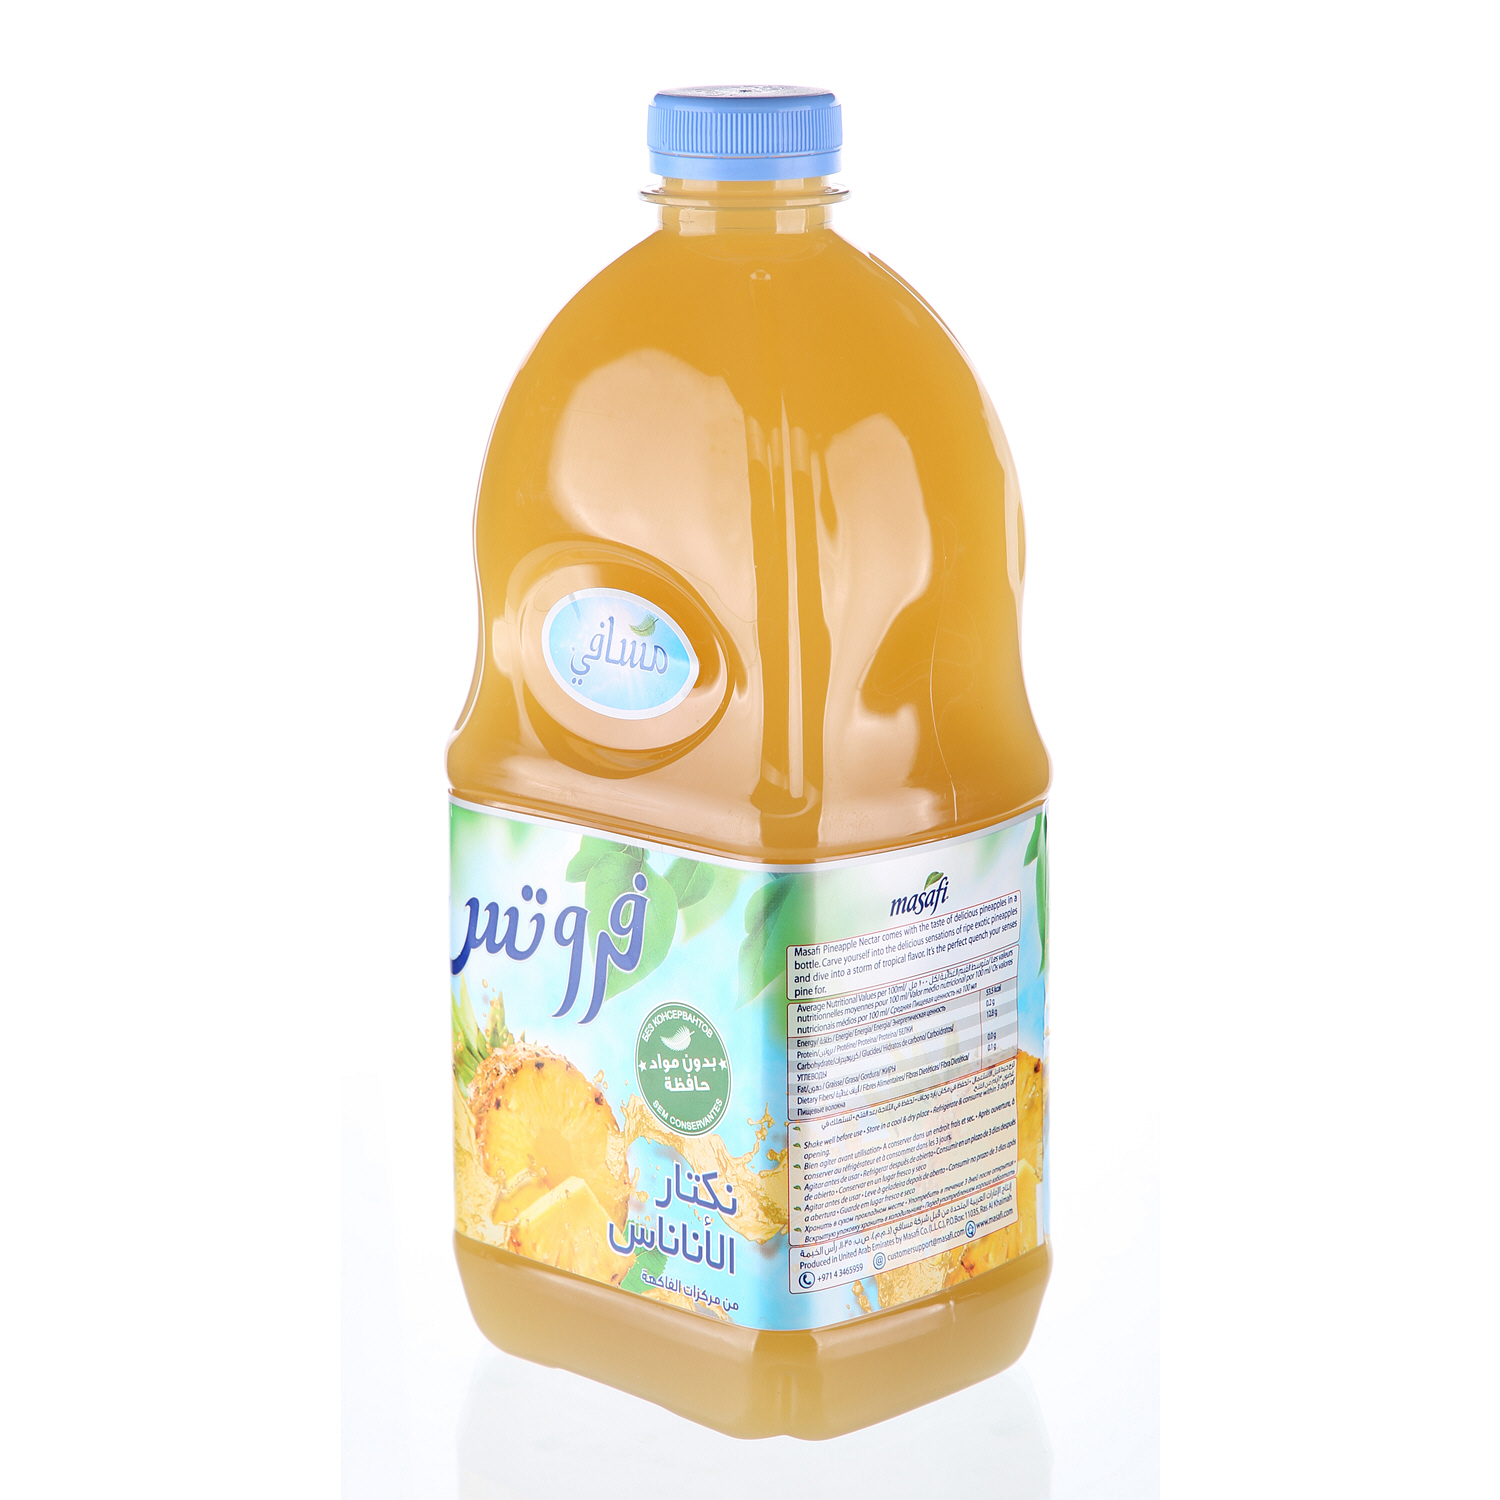 Masafi Juice Caribbean 2Ltr